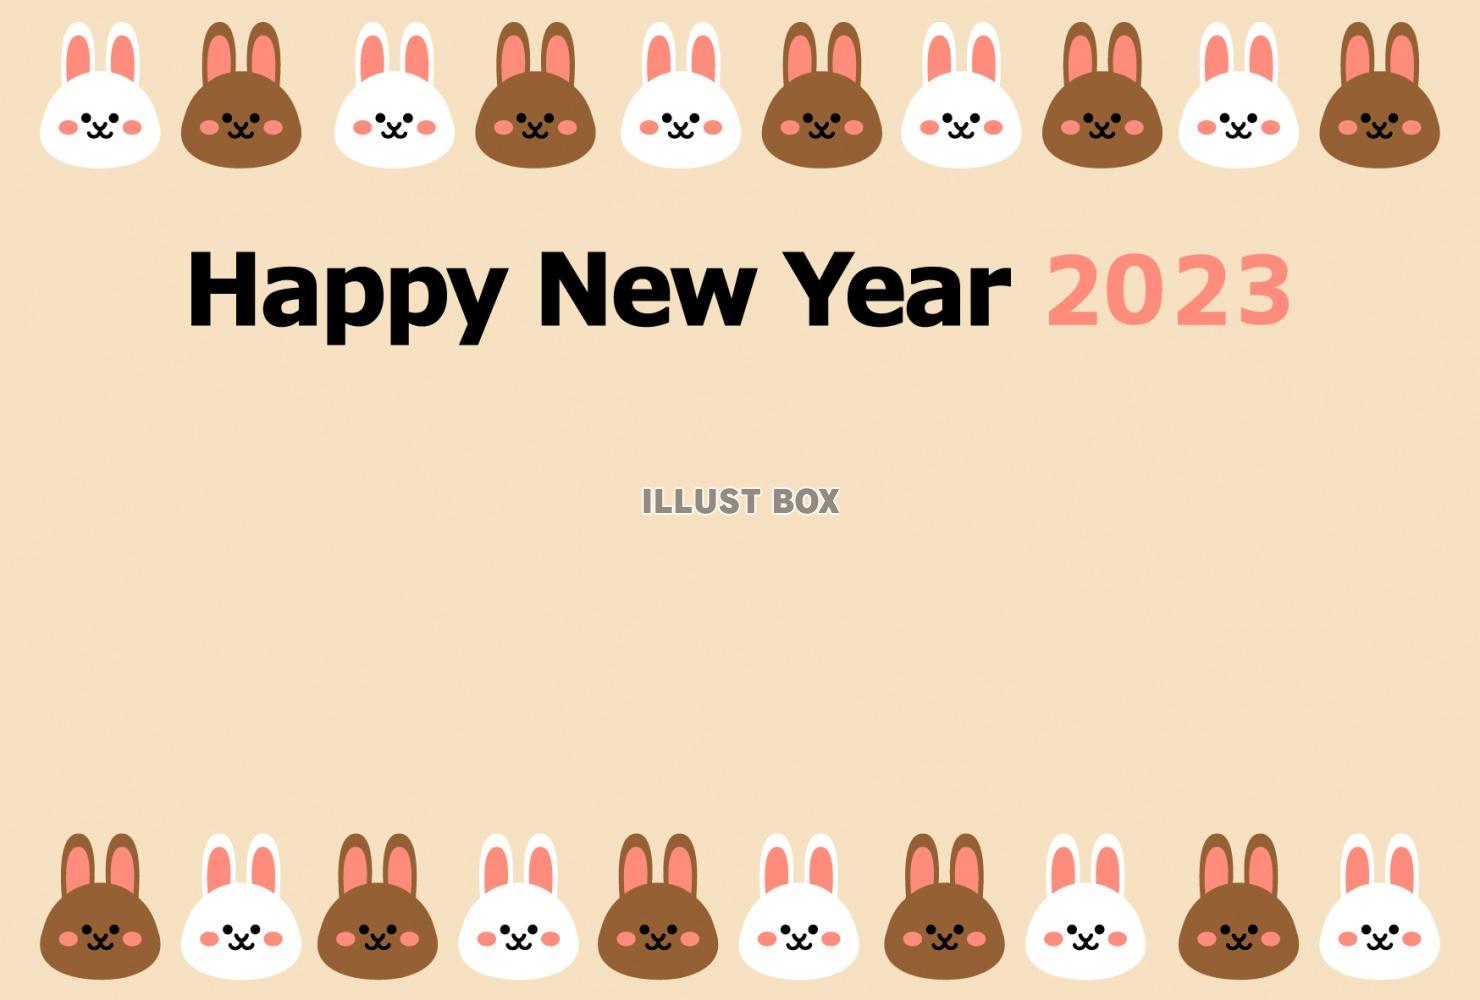 ２色のかわいいウサギの顔が上下に並んだ2023年横向き年賀状